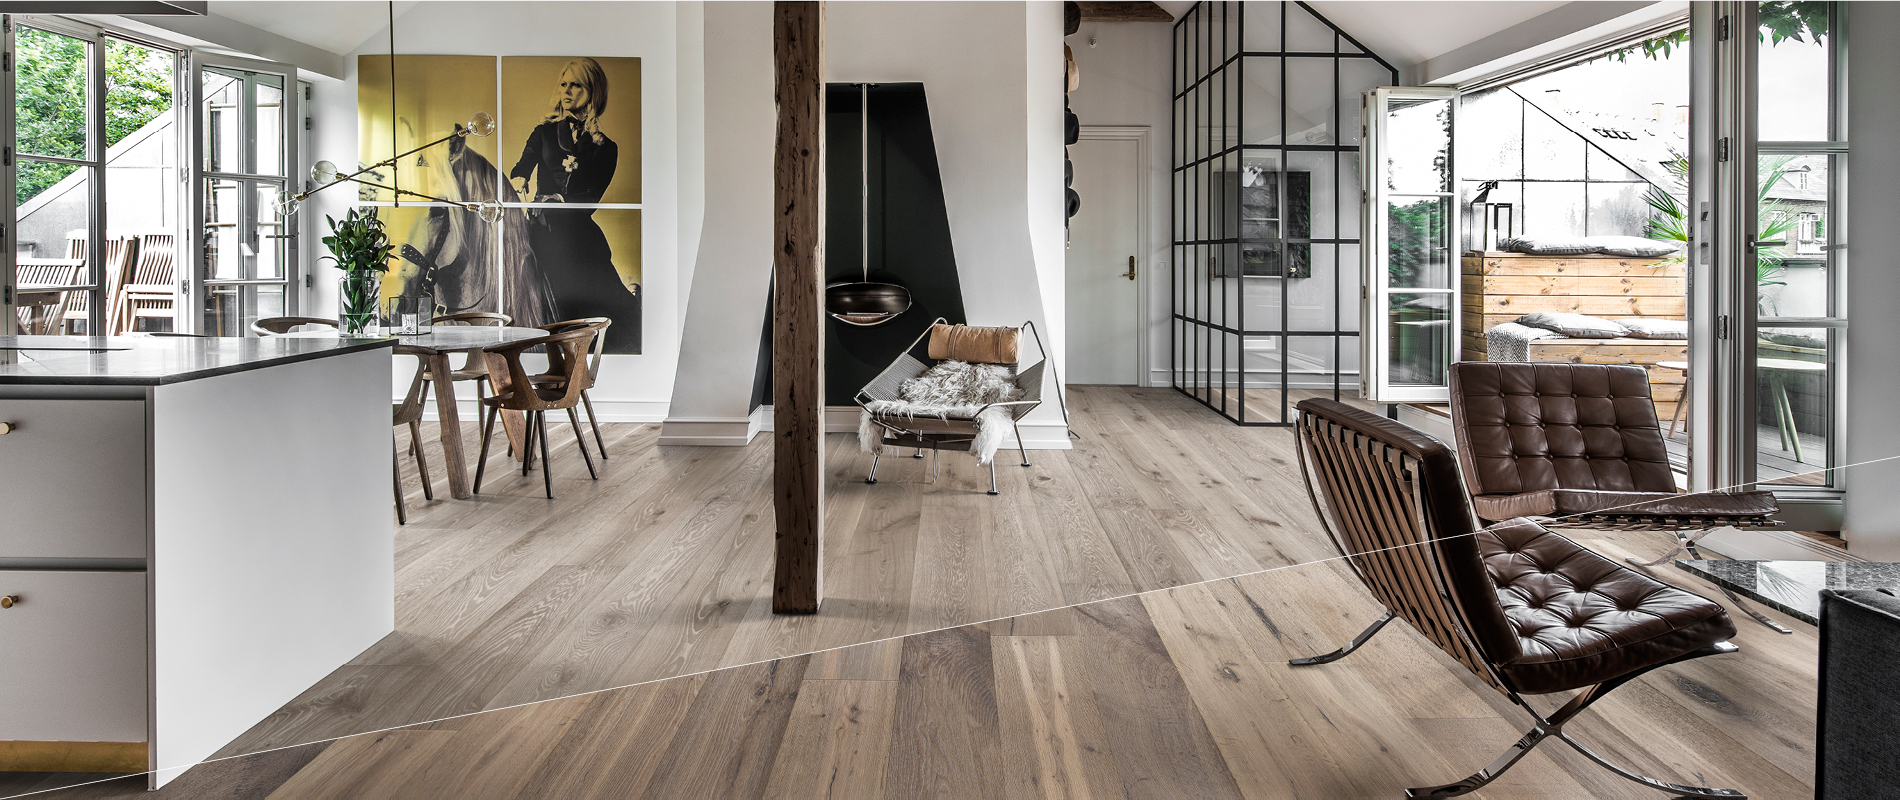 Kährs Makes Flooring The Easy Choice, All About Wood Hardwood Floors Inc